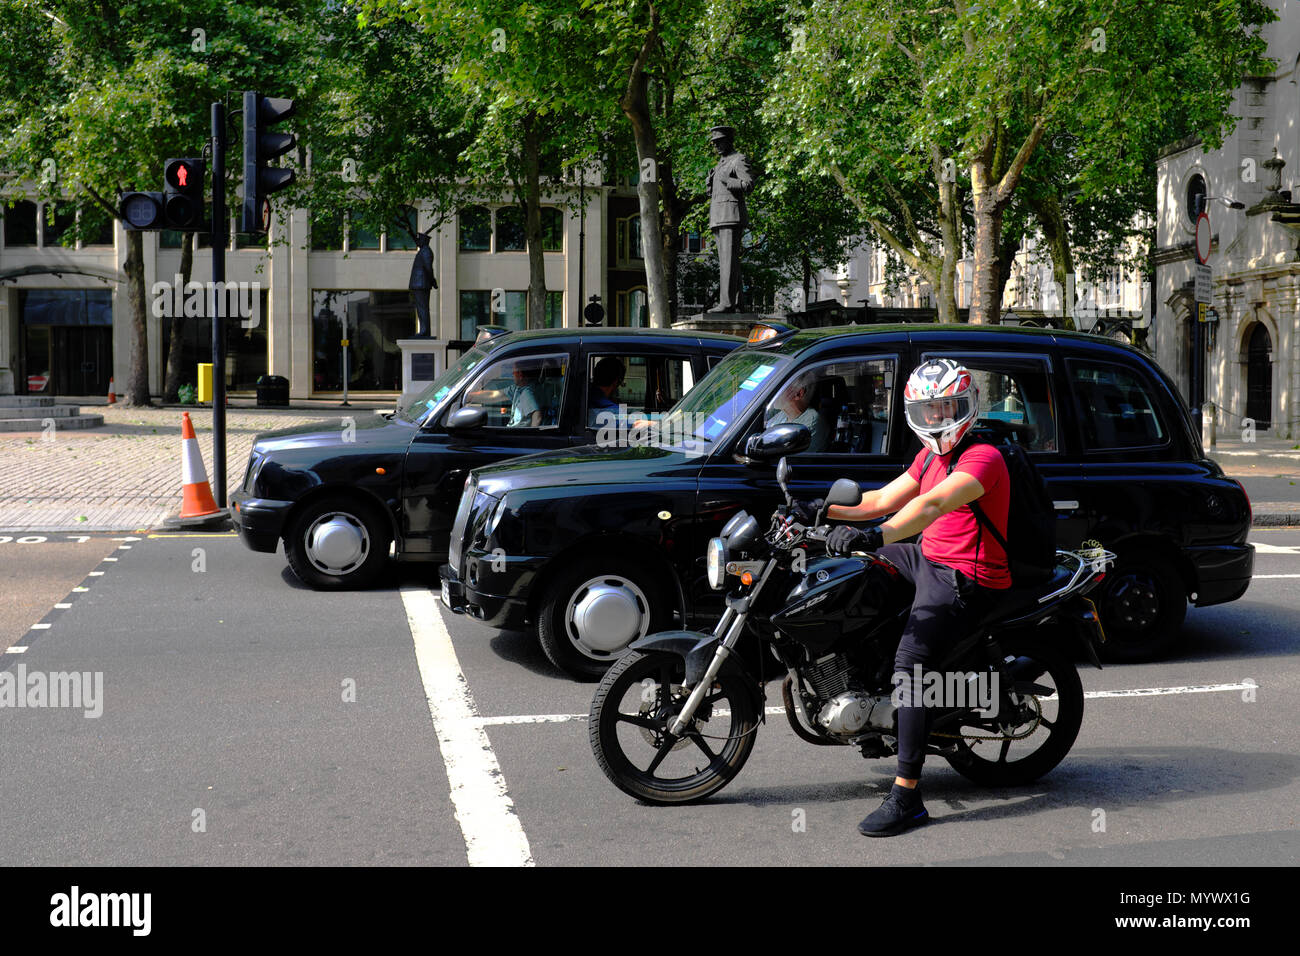 Moto e i Taxi in attesa di un semaforo, London, England, Regno Unito Foto Stock